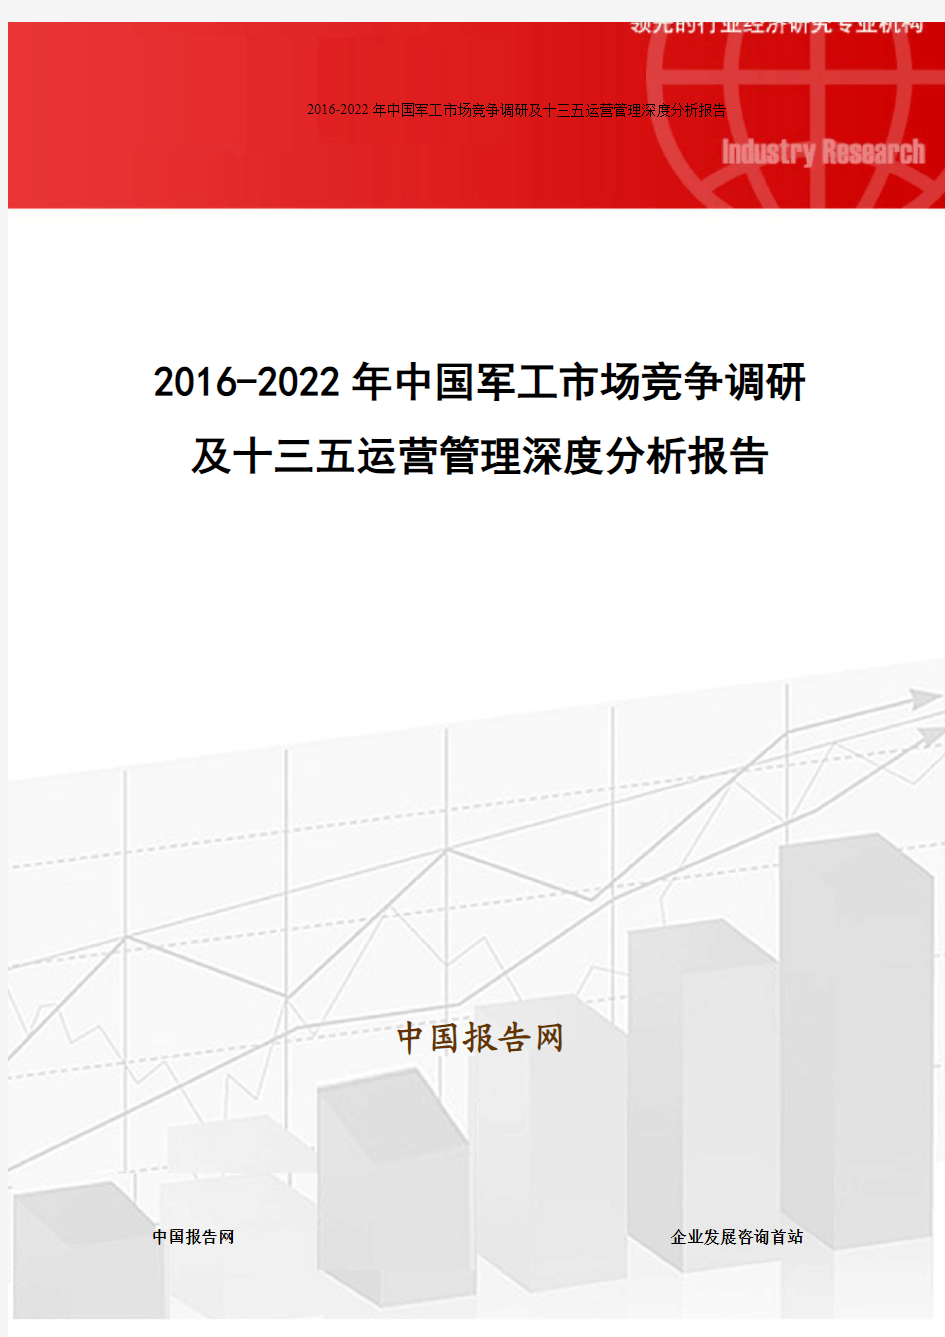 2016-2022年中国军工市场竞争调研及十三五运营管理深度分析报告